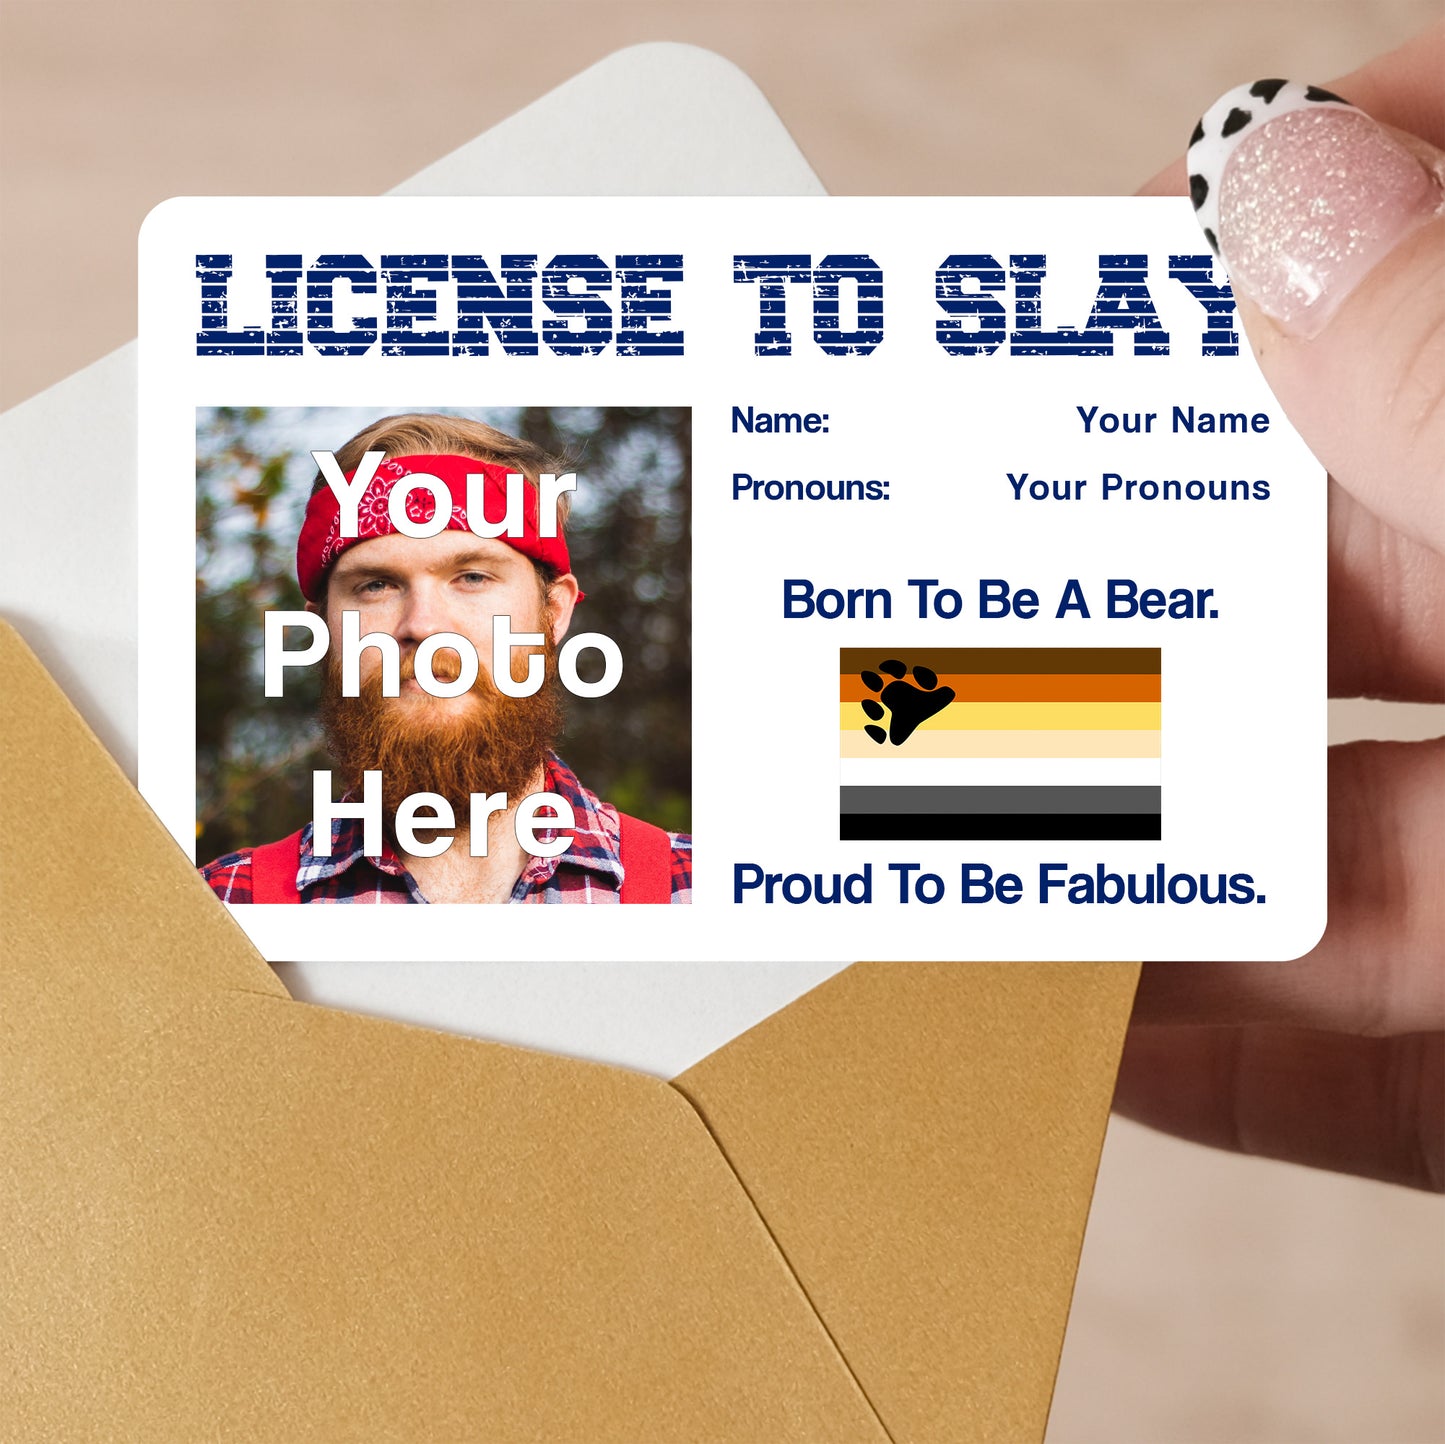 Bear brotherhood pride personalised license to slay card